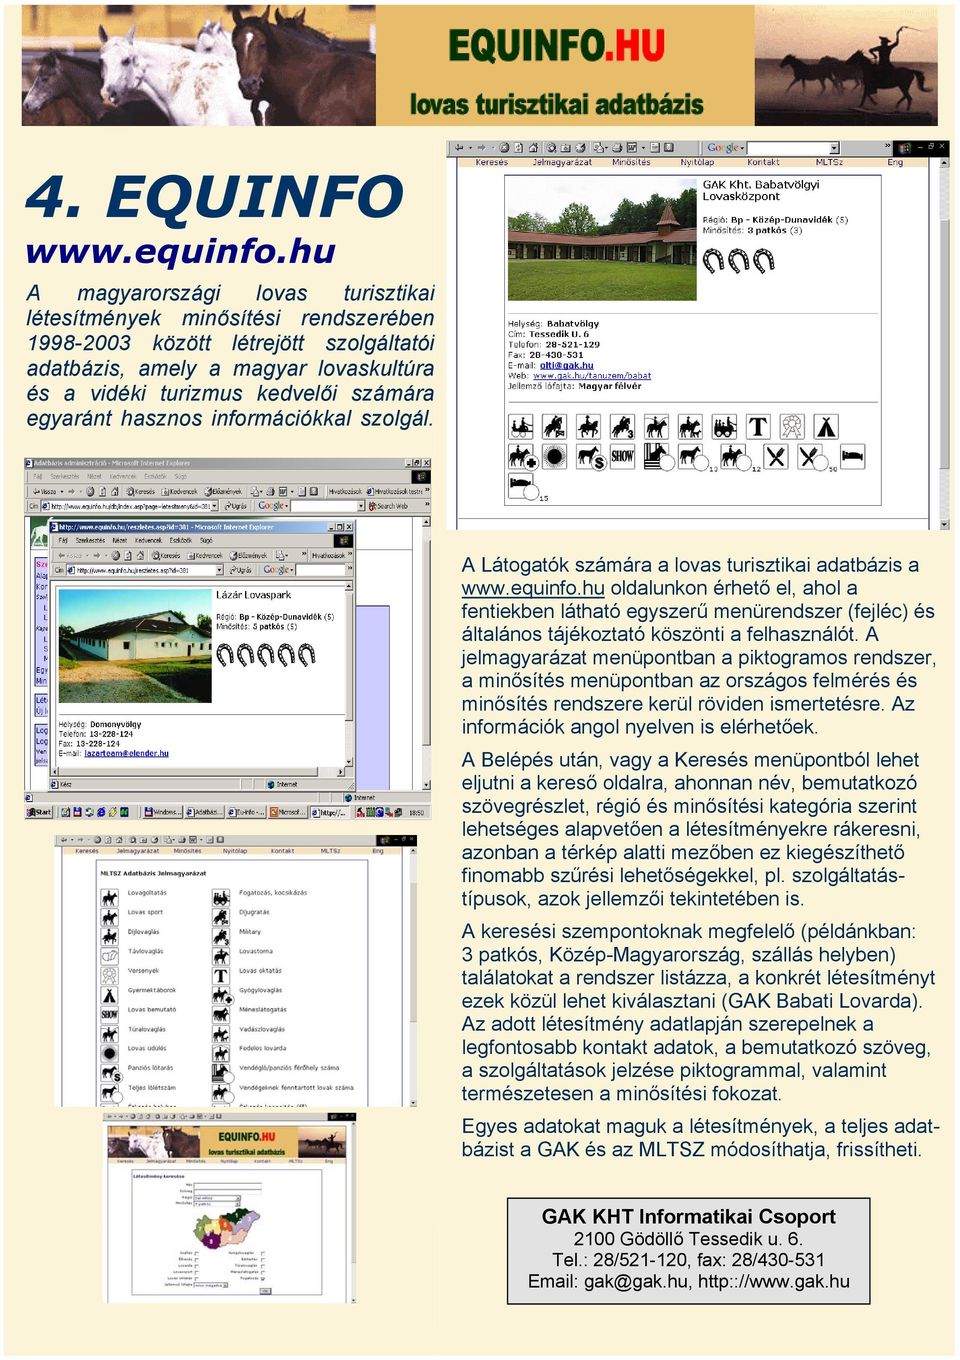 egyaránt hasznos információkkal szolgál. A Látogatók számára a lovas turisztikai adatbázis a www.equinfo.